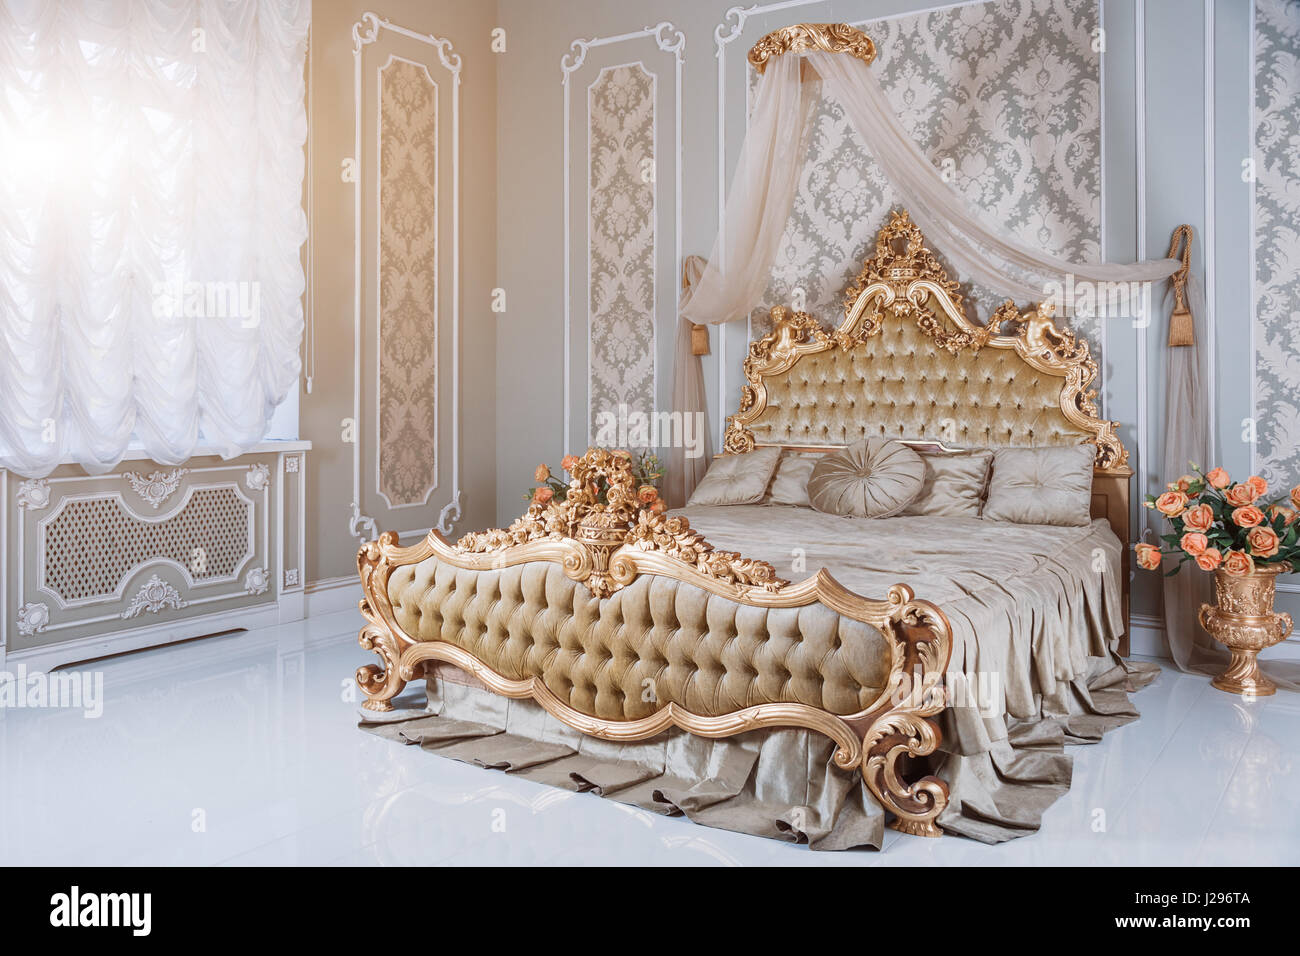 Luxus Schlafzimmer in hellen Farben mit goldenen Möbel Details. Große  komfortable Doppelzimmer Königsbett in eleganten klassischen Interieur  Stockfotografie - Alamy